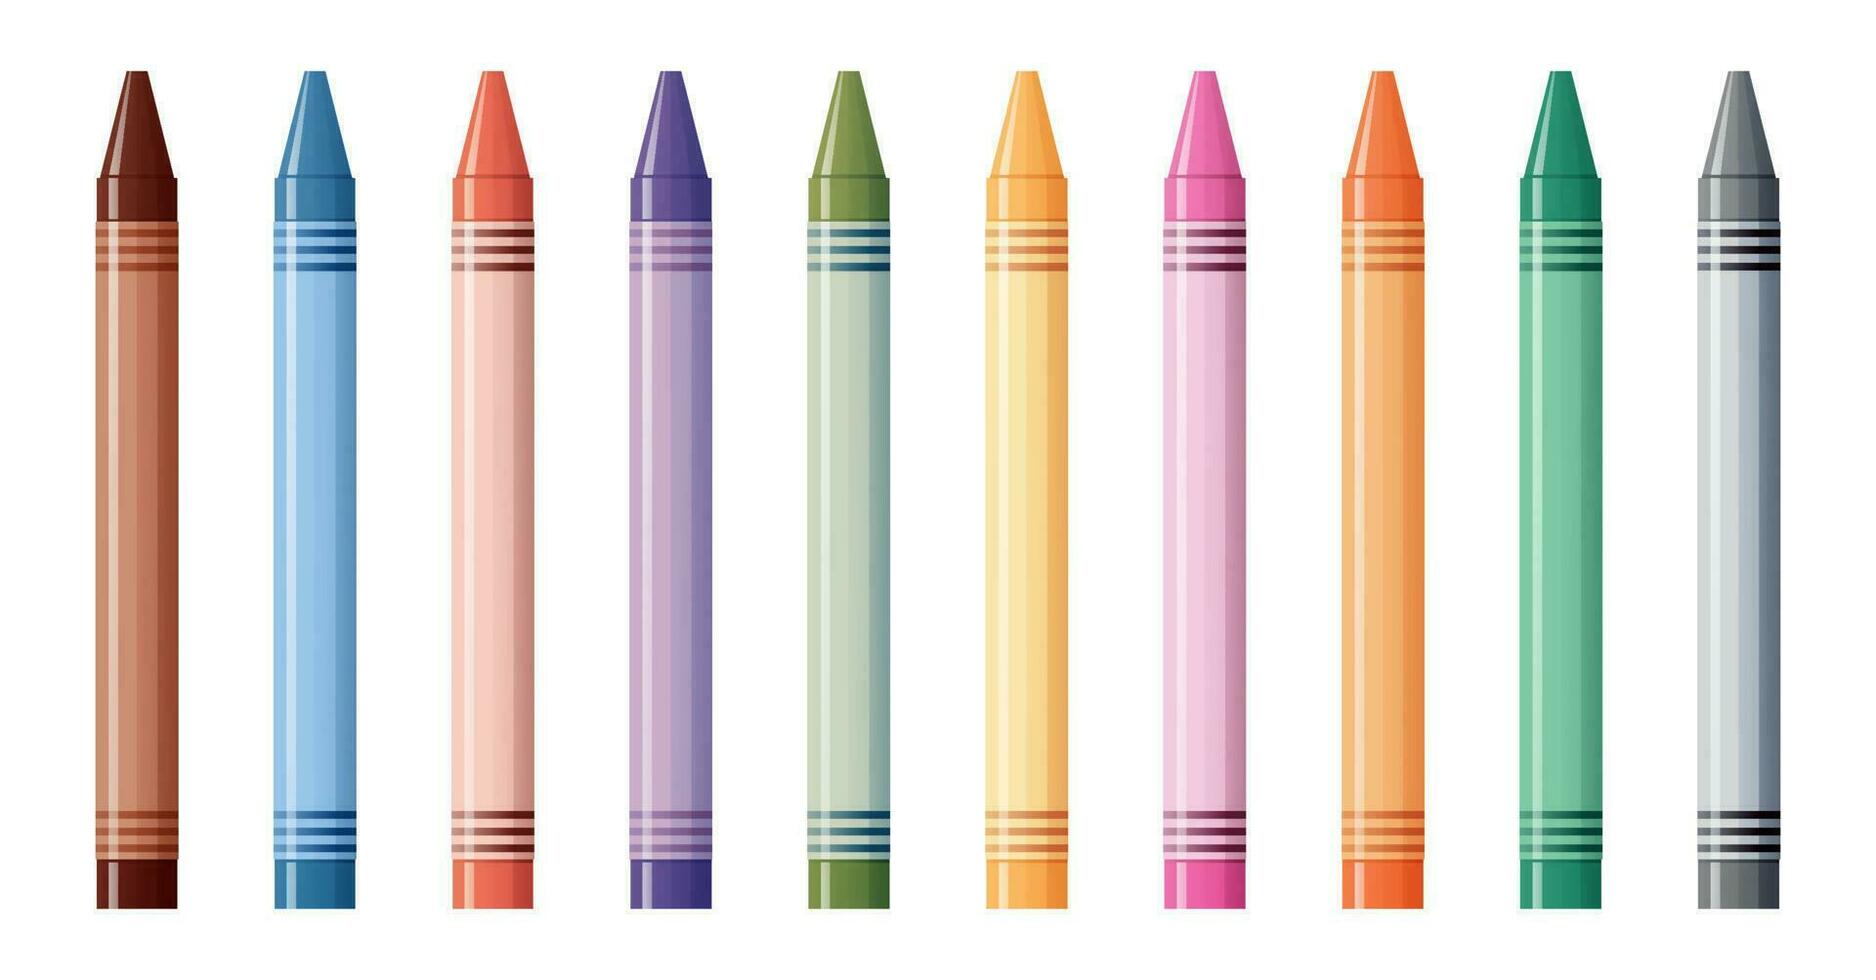 einstellen von Vektor farbig Wachs Buntstifte isoliert auf Weiß Hintergrund. Schule Lieferungen, Schreibwaren, Kreativität, Hobby, Kunst Werkzeug.